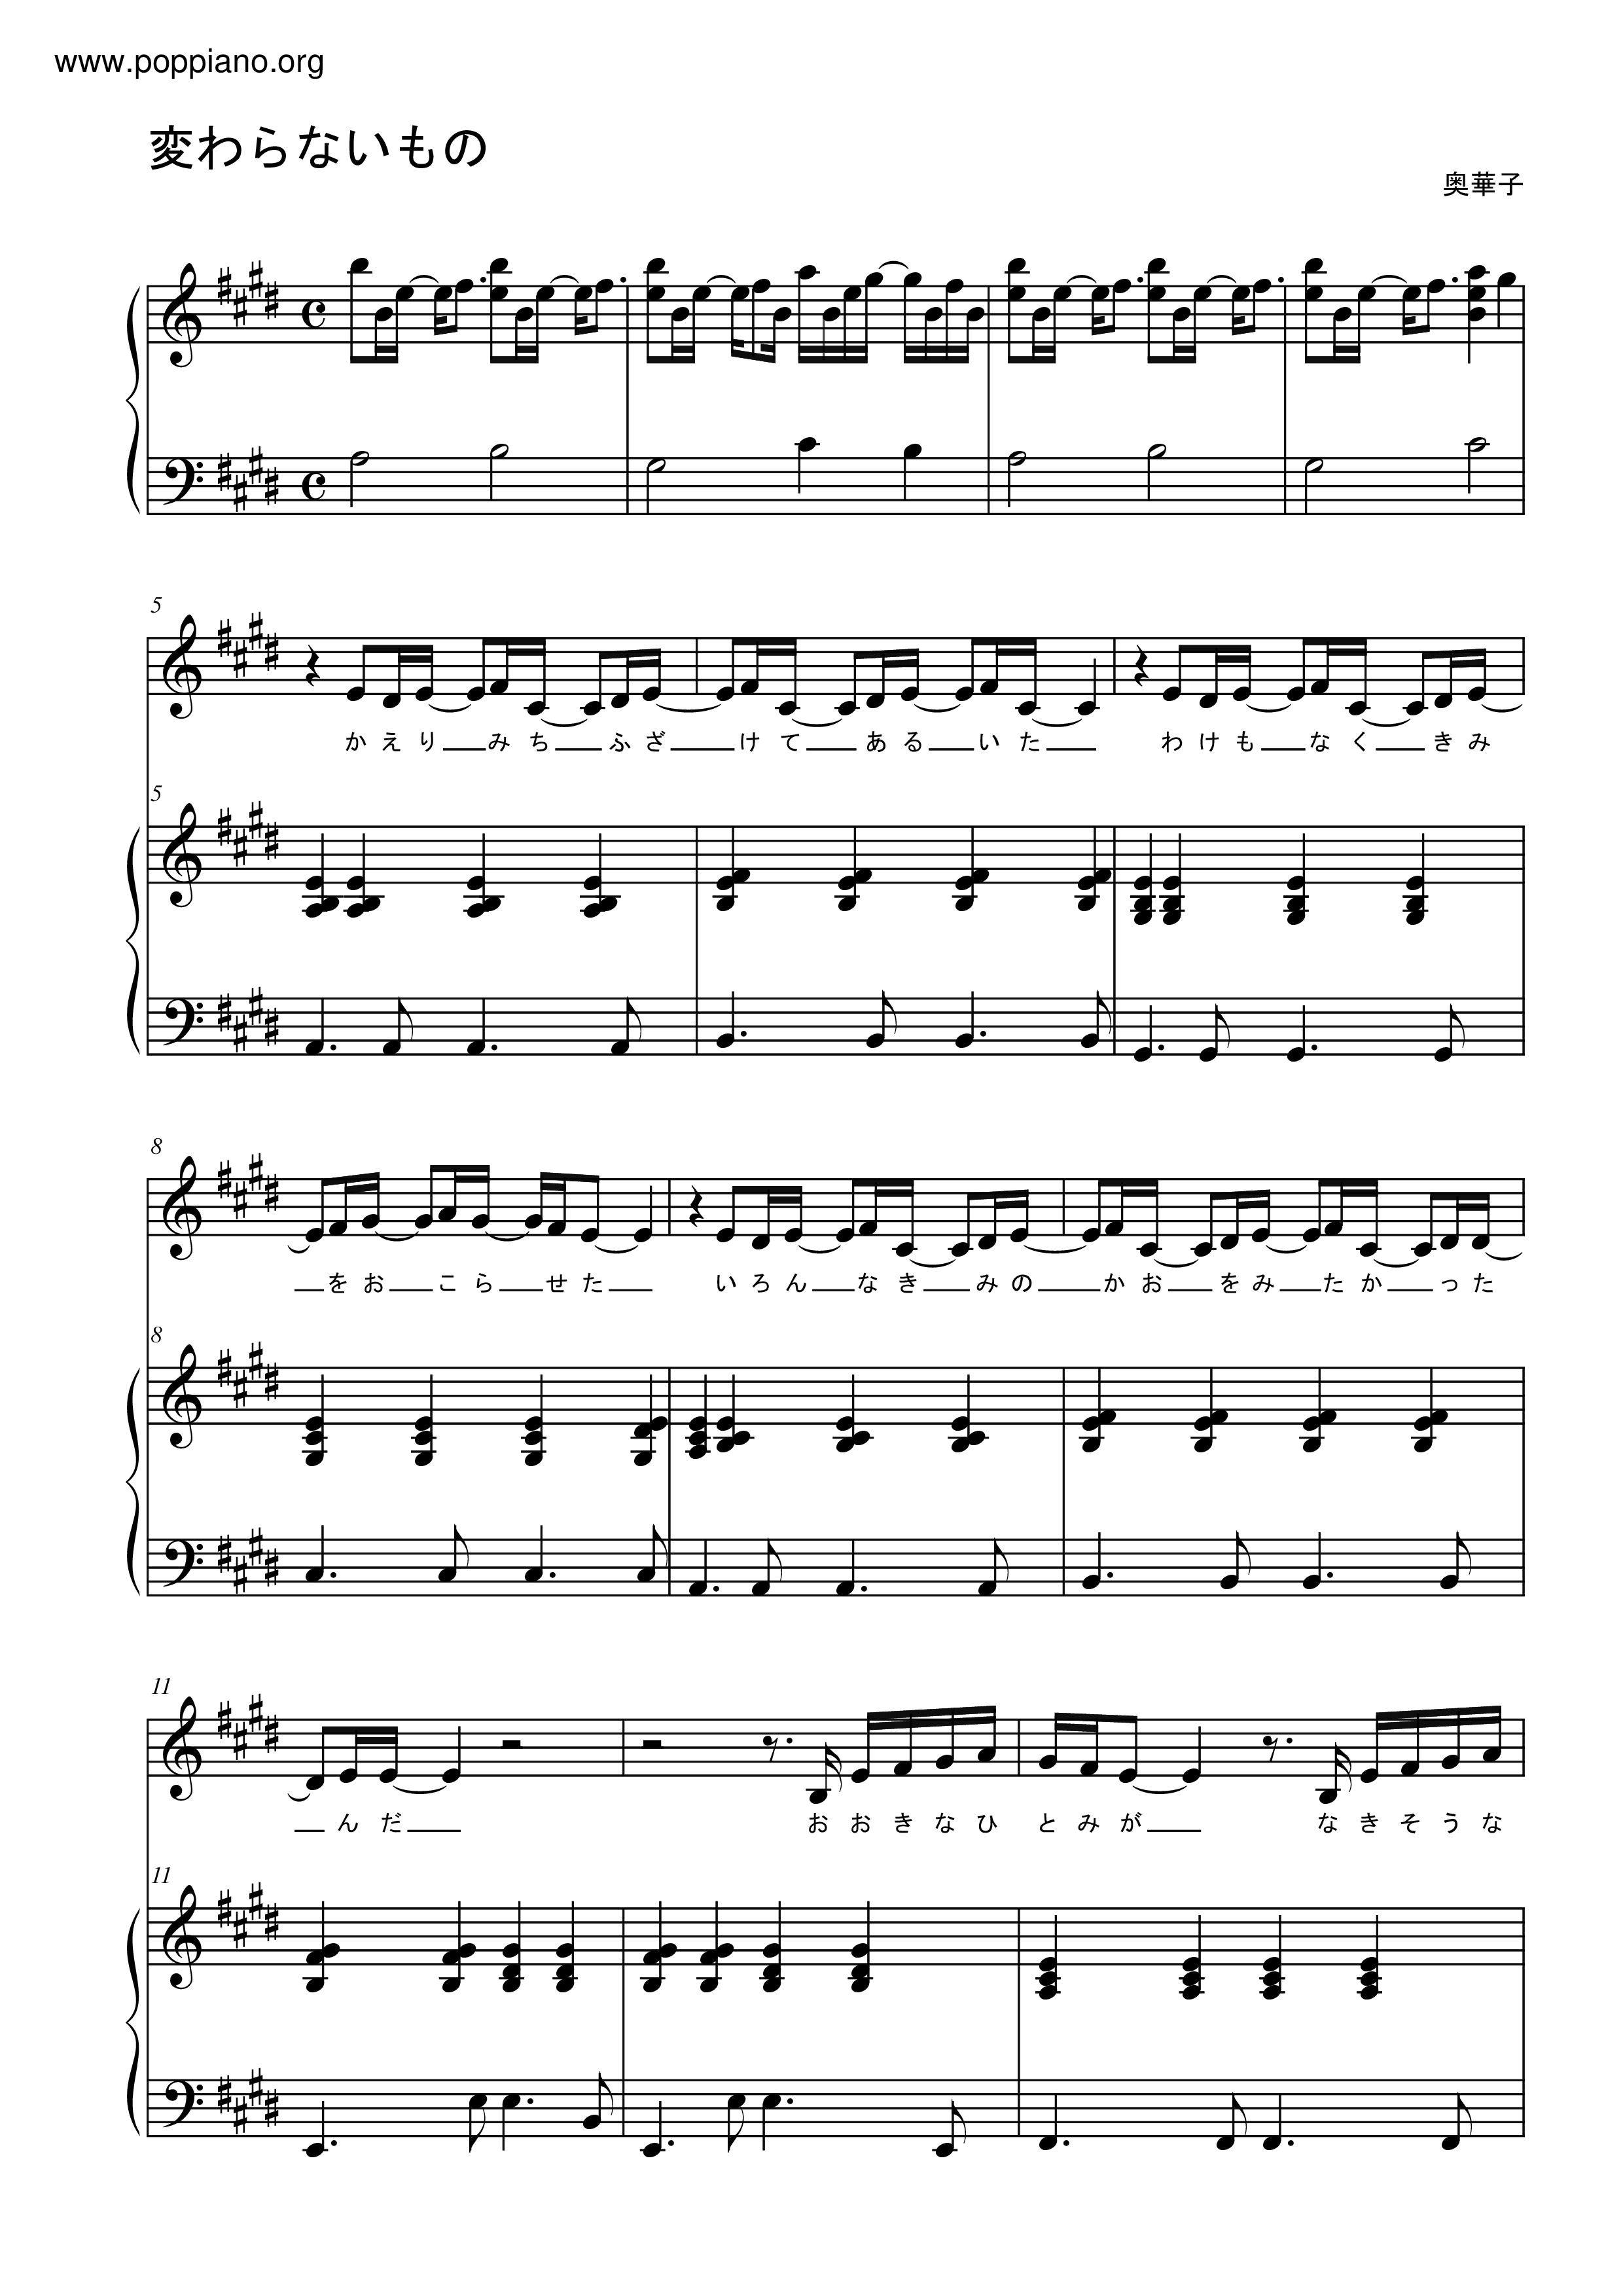 Kawaranai Mono Score